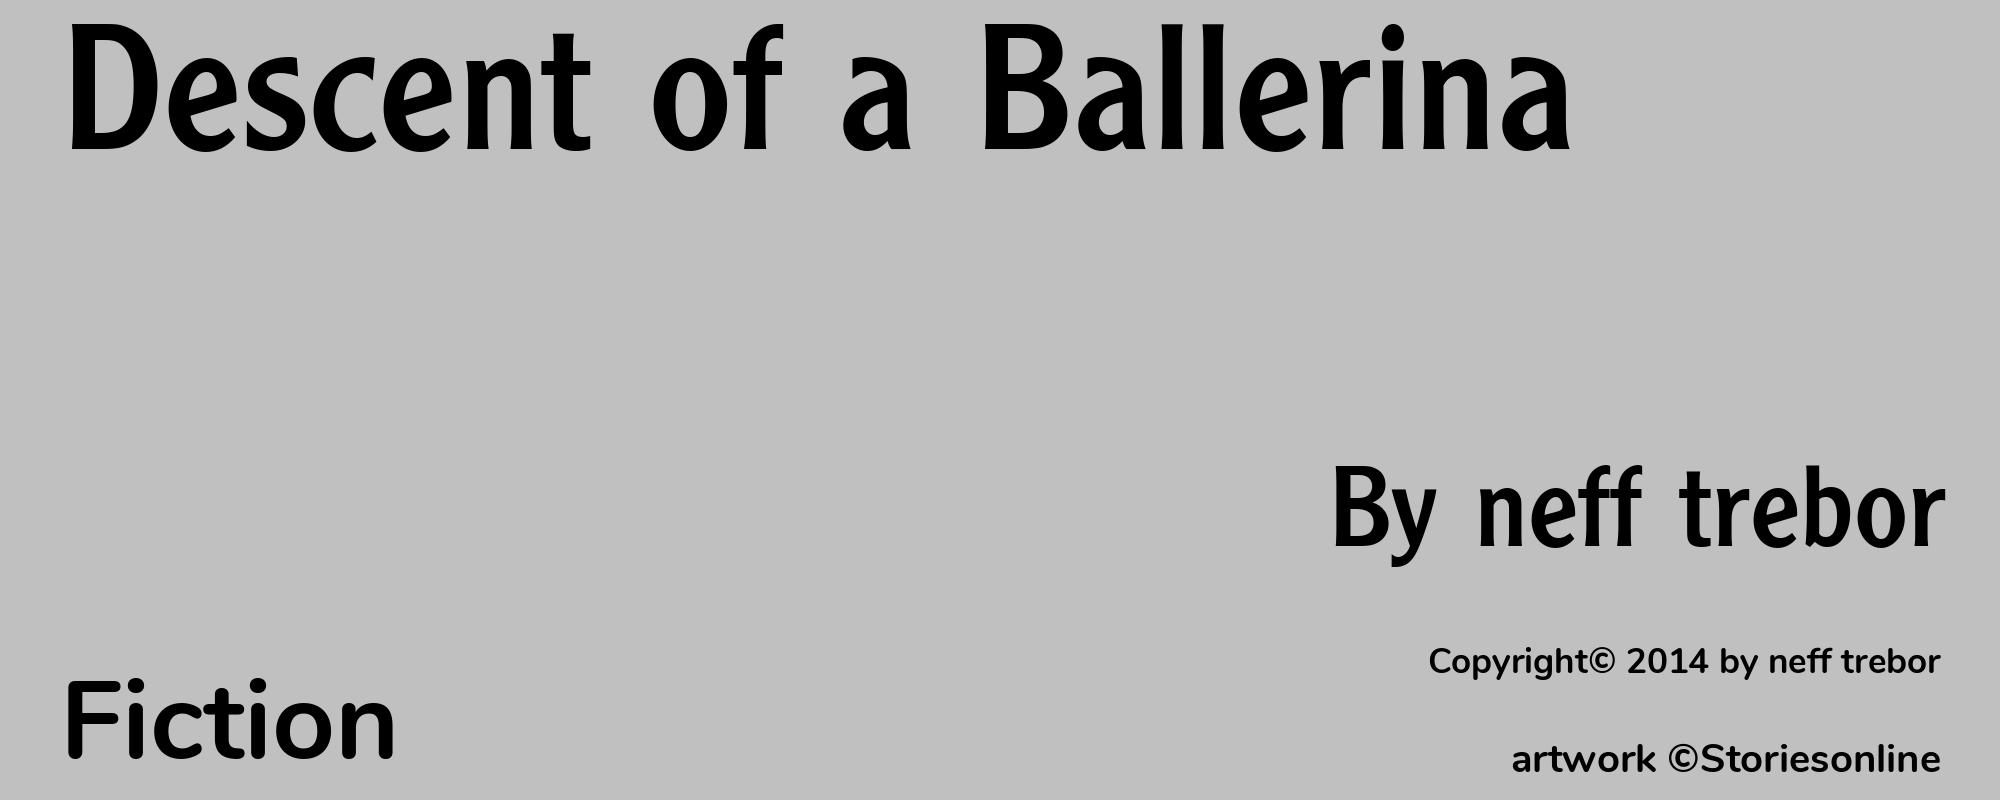 Descent of a Ballerina - Cover